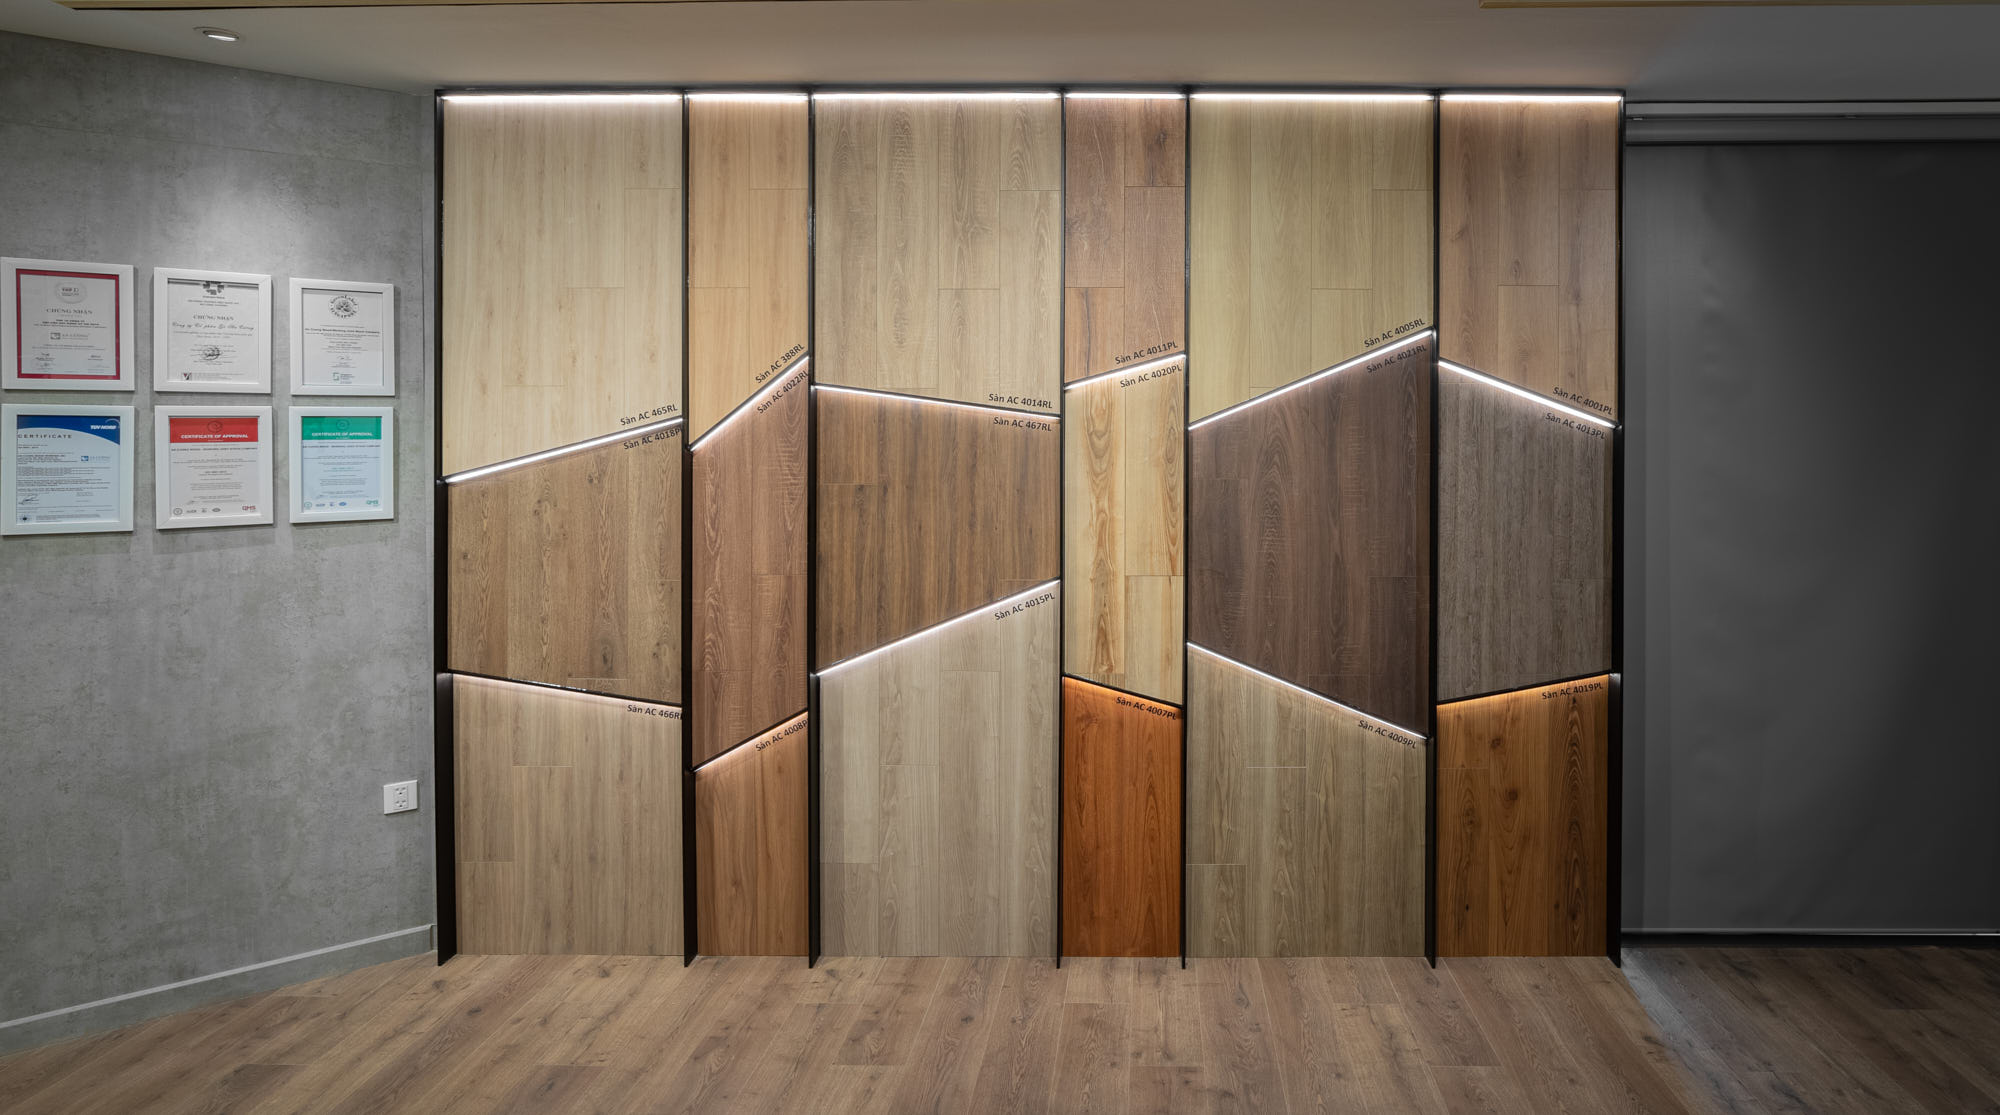 Bảng màu ván gỗ đa dạng và phong phú sẽ giúp bạn tạo nên những sản phẩm nội thất độc đáo và đẹp mắt. Hãy đến với chúng tôi để được tư vấn về màu sắc, chất liệu và phong cách phù hợp nhất với dự án của bạn.